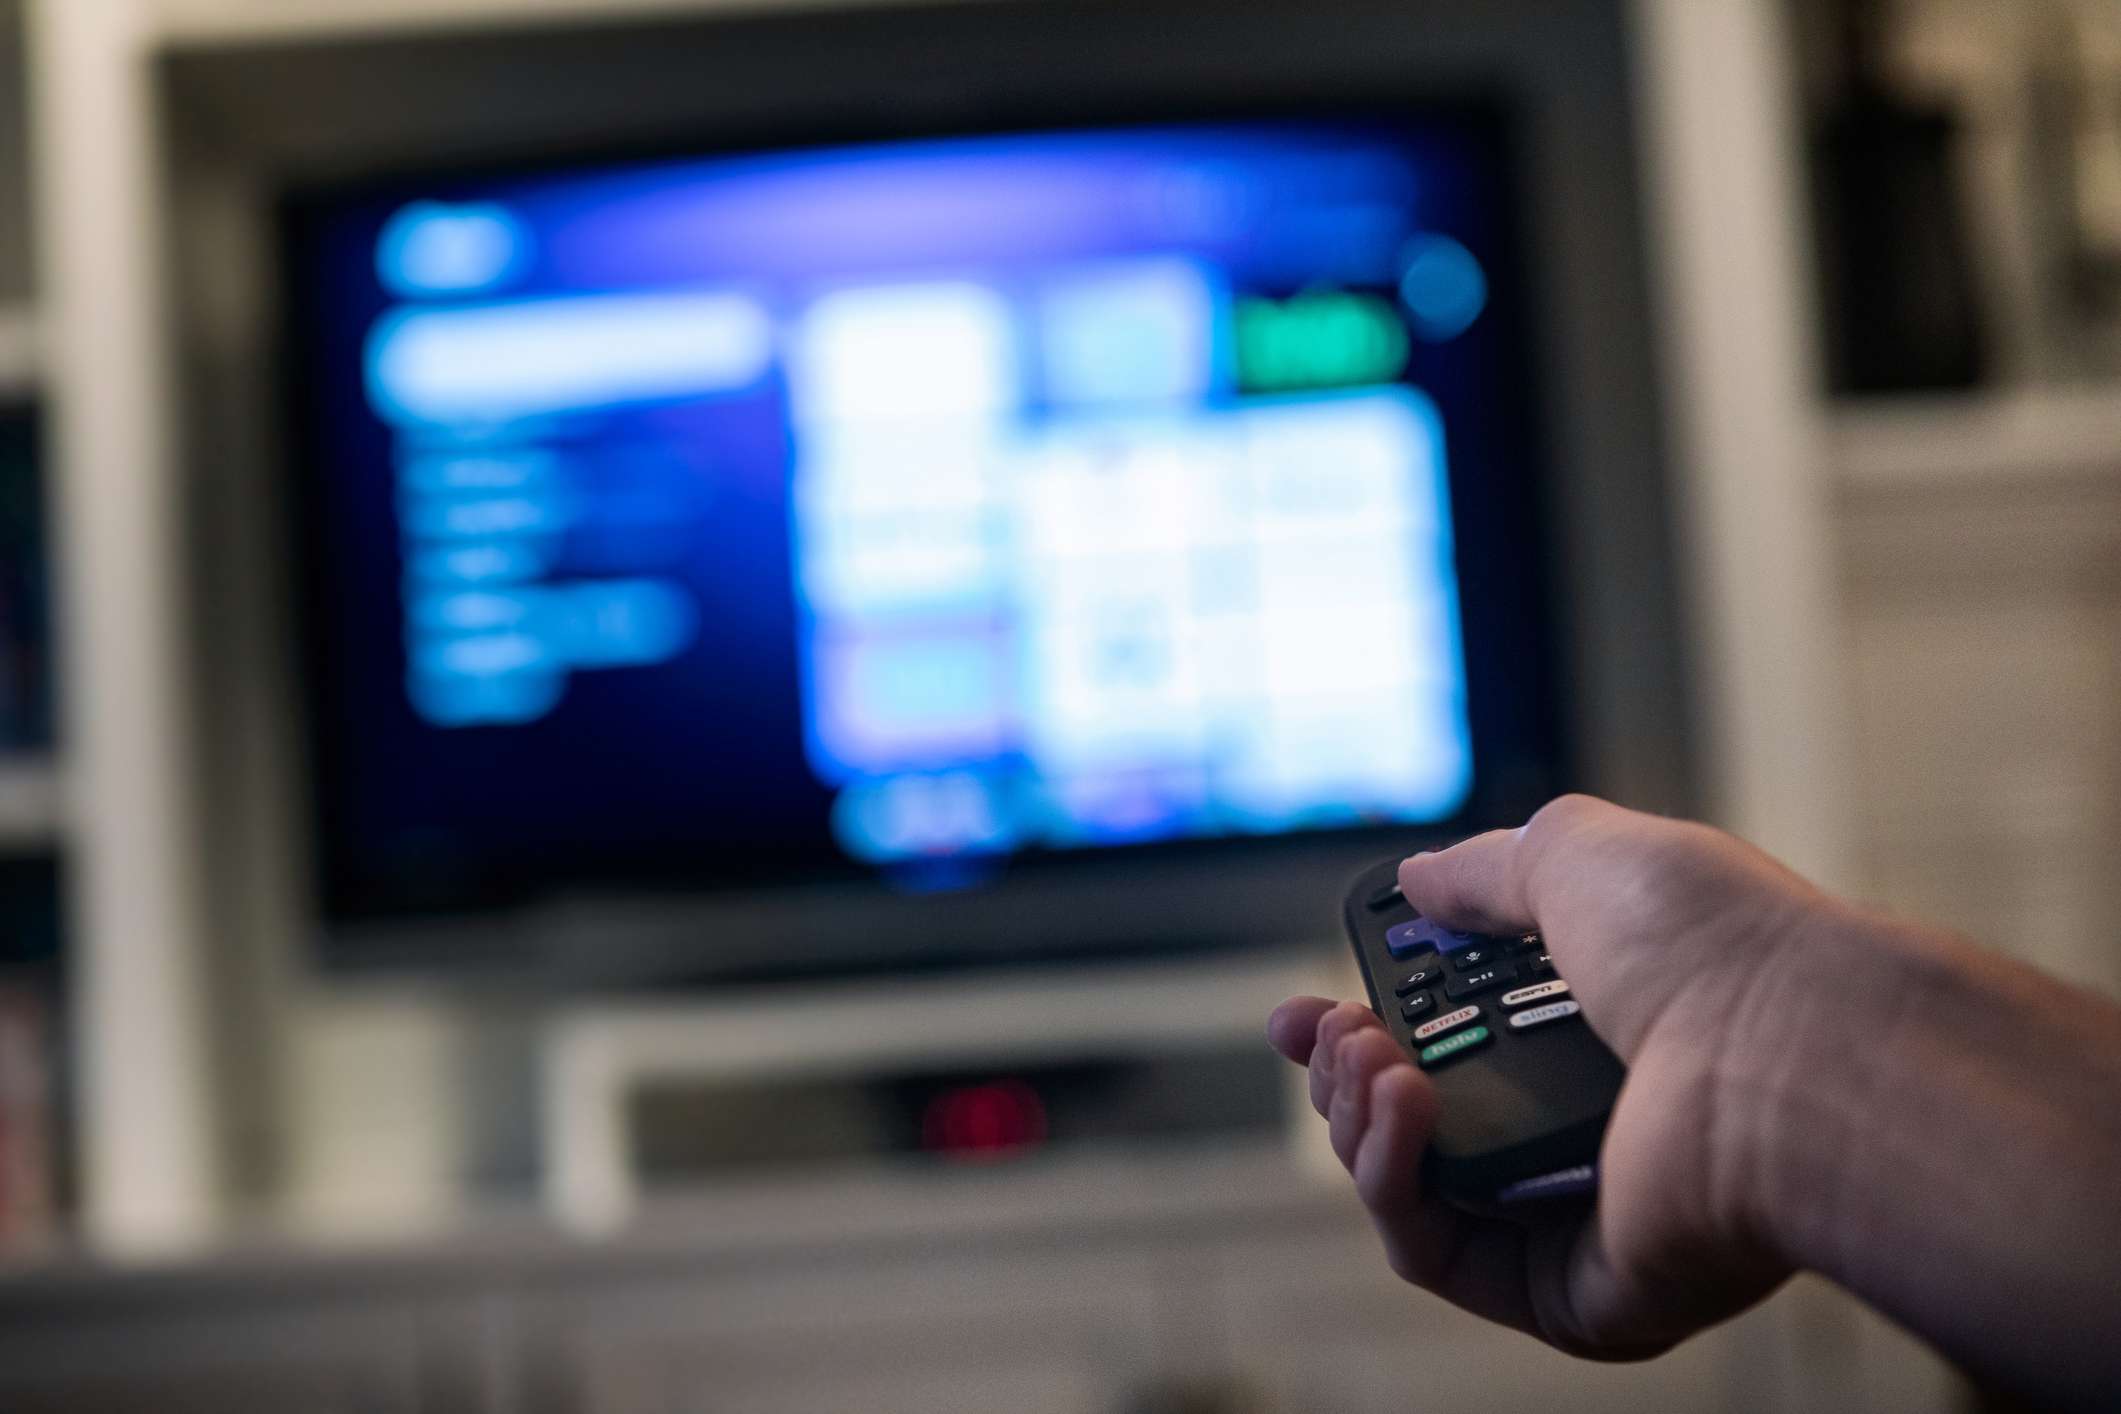 close-up van een hand die de afstandsbediening van een televisie vasthoudt met de tv op de achtergrond. 